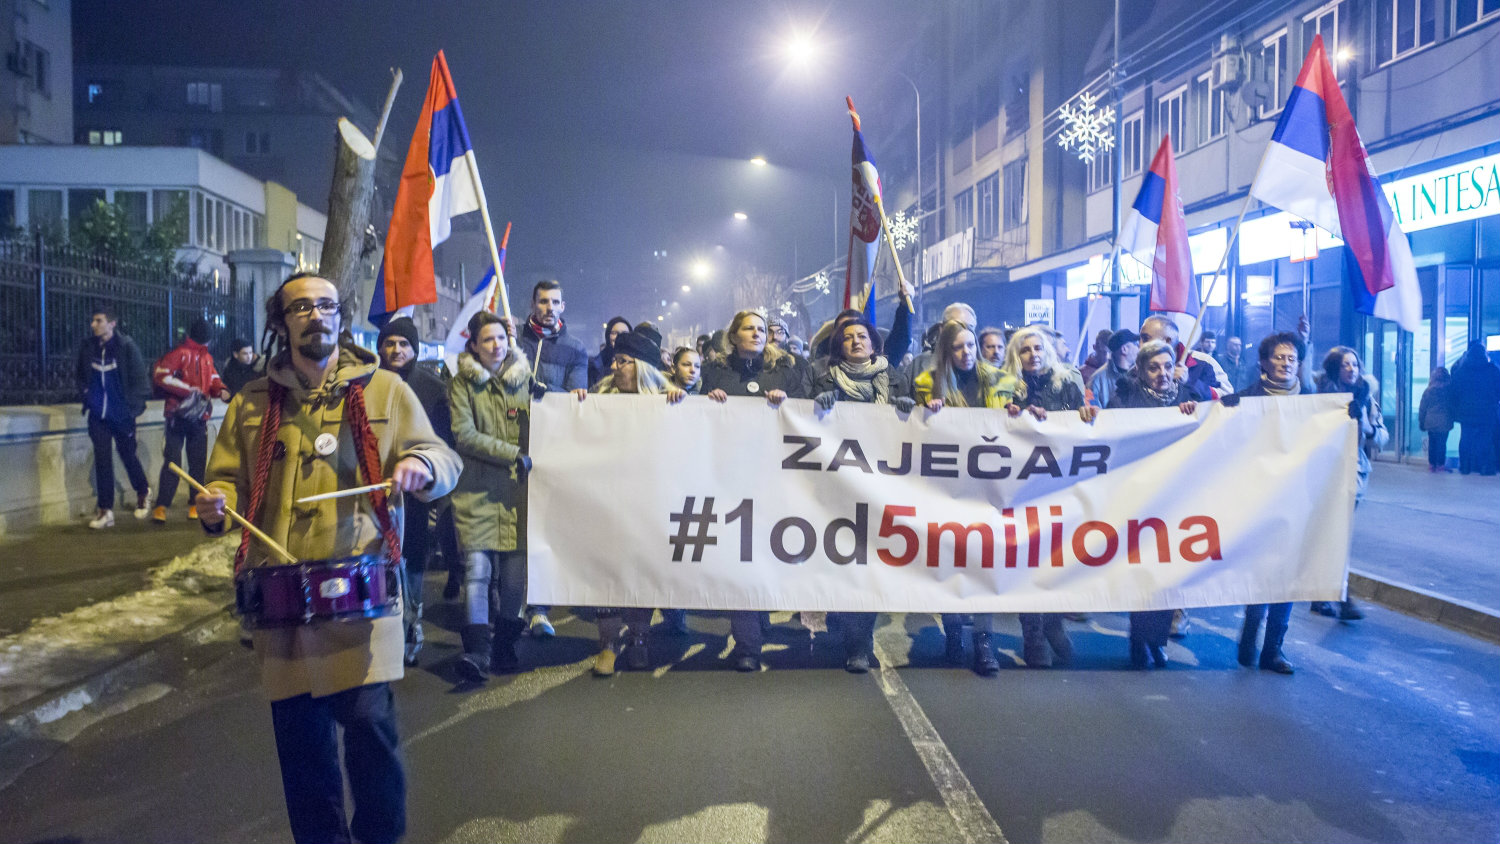 Drugi Građanski protest 1 od 5 miliona danas u Boru i Zaječaru 1